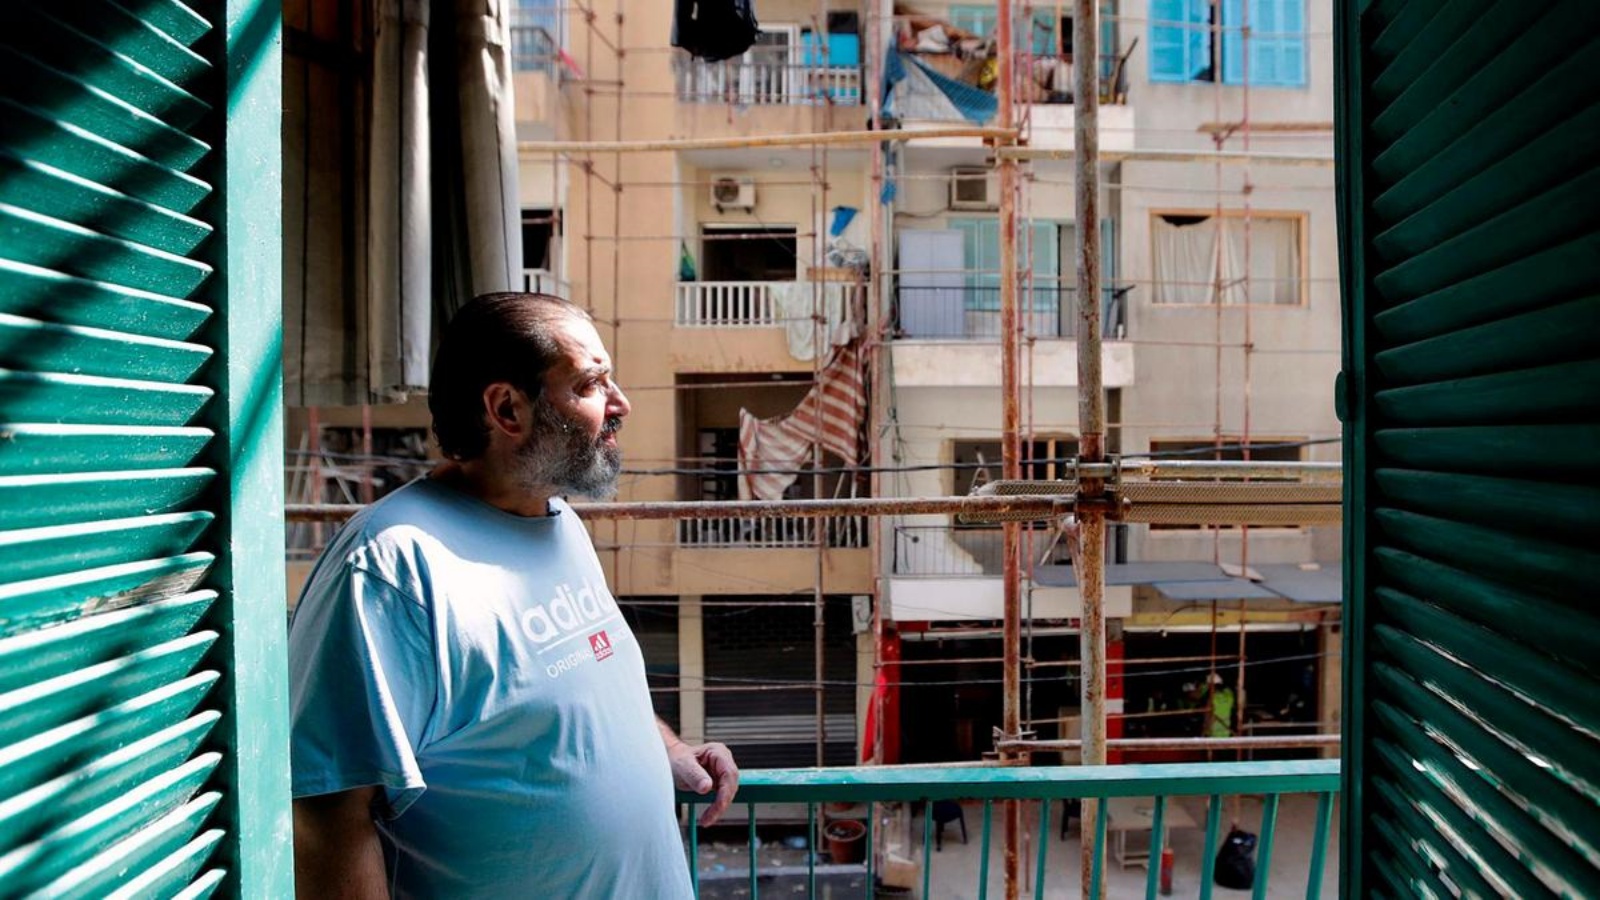 اللبناني-الأرمني ديكران جيوزوبيوكيان في منزله في حي مار ميخائيل في بيروت بعد تجديده من قبل الإتحاد الخيري العام الأرمني. أ ف ب